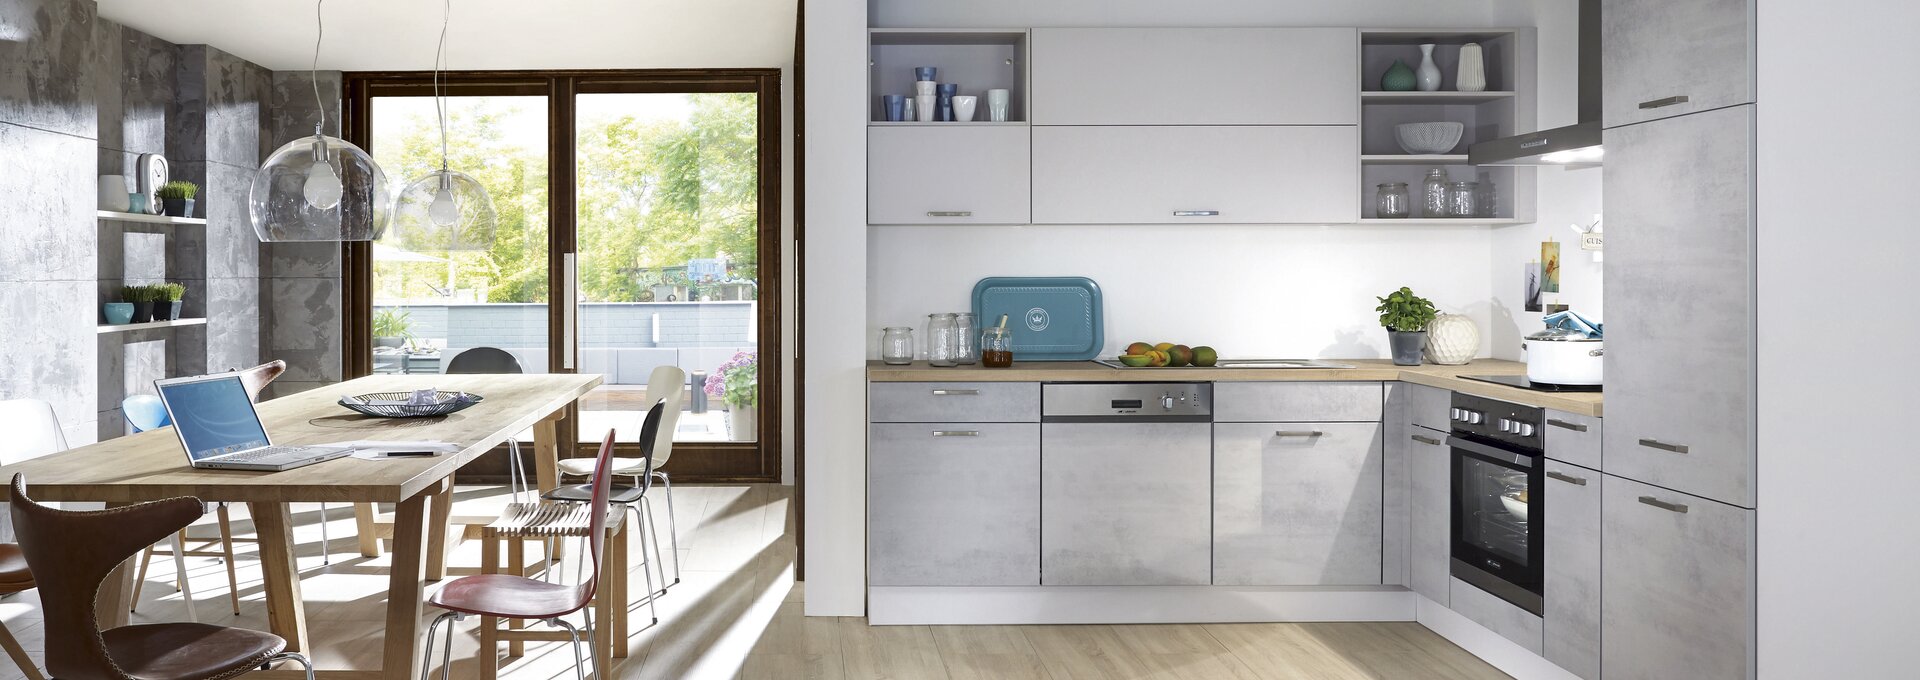 Küche LForm » Moderne Küche in Beton Grau Küche&Co